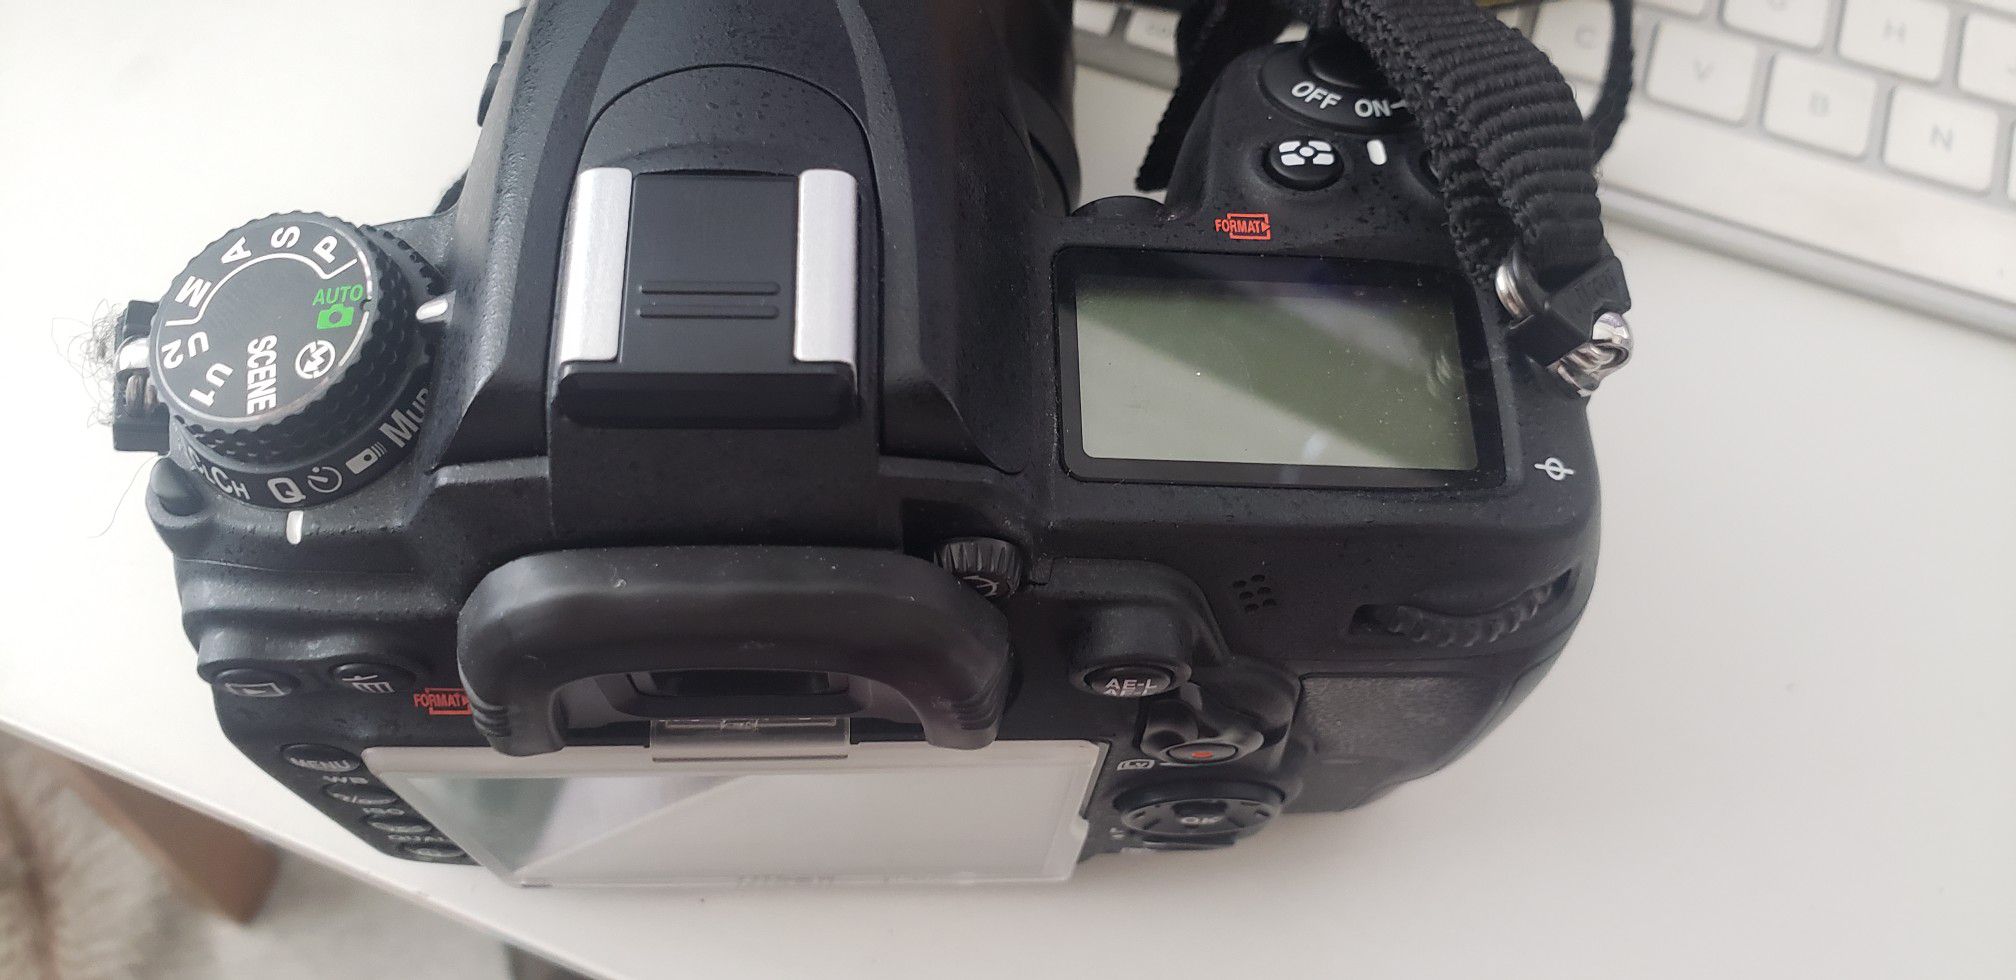 Nikon D7000 + 35mm 1.8 Nikkor lenses + Evecase